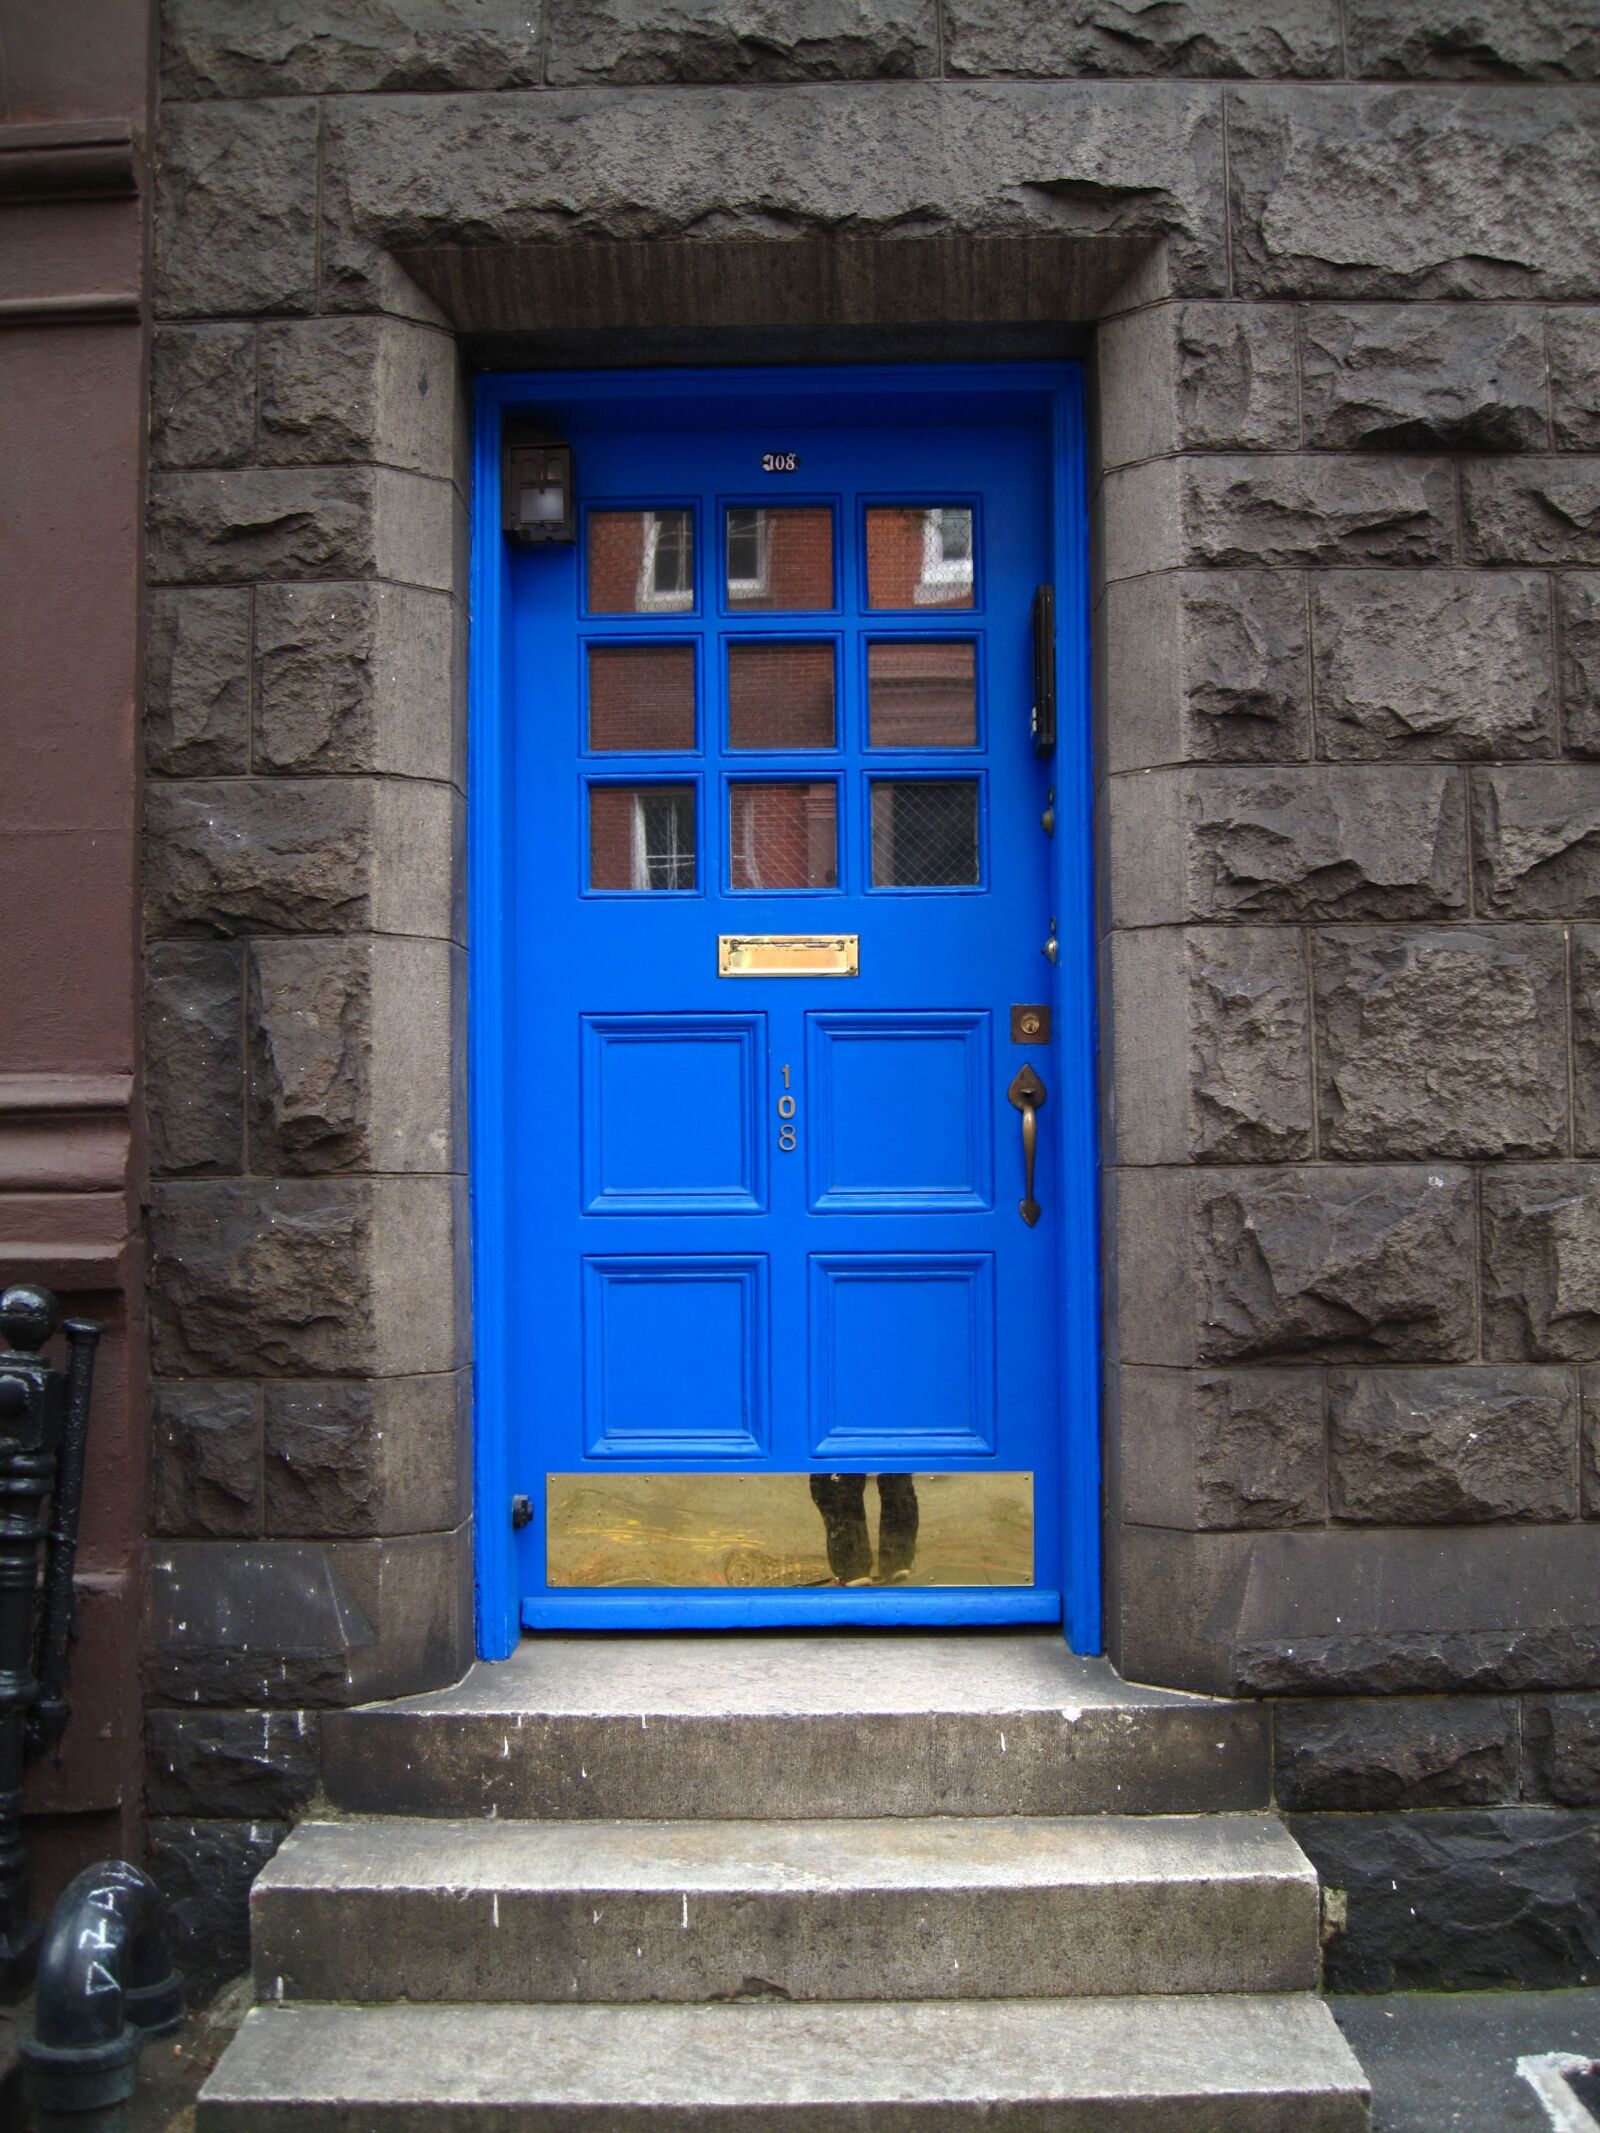 Canon PowerShot SD990 IS (Digital IXUS 980 IS / IXY Digital 3000 IS) sample photo. Blue, door, door photography